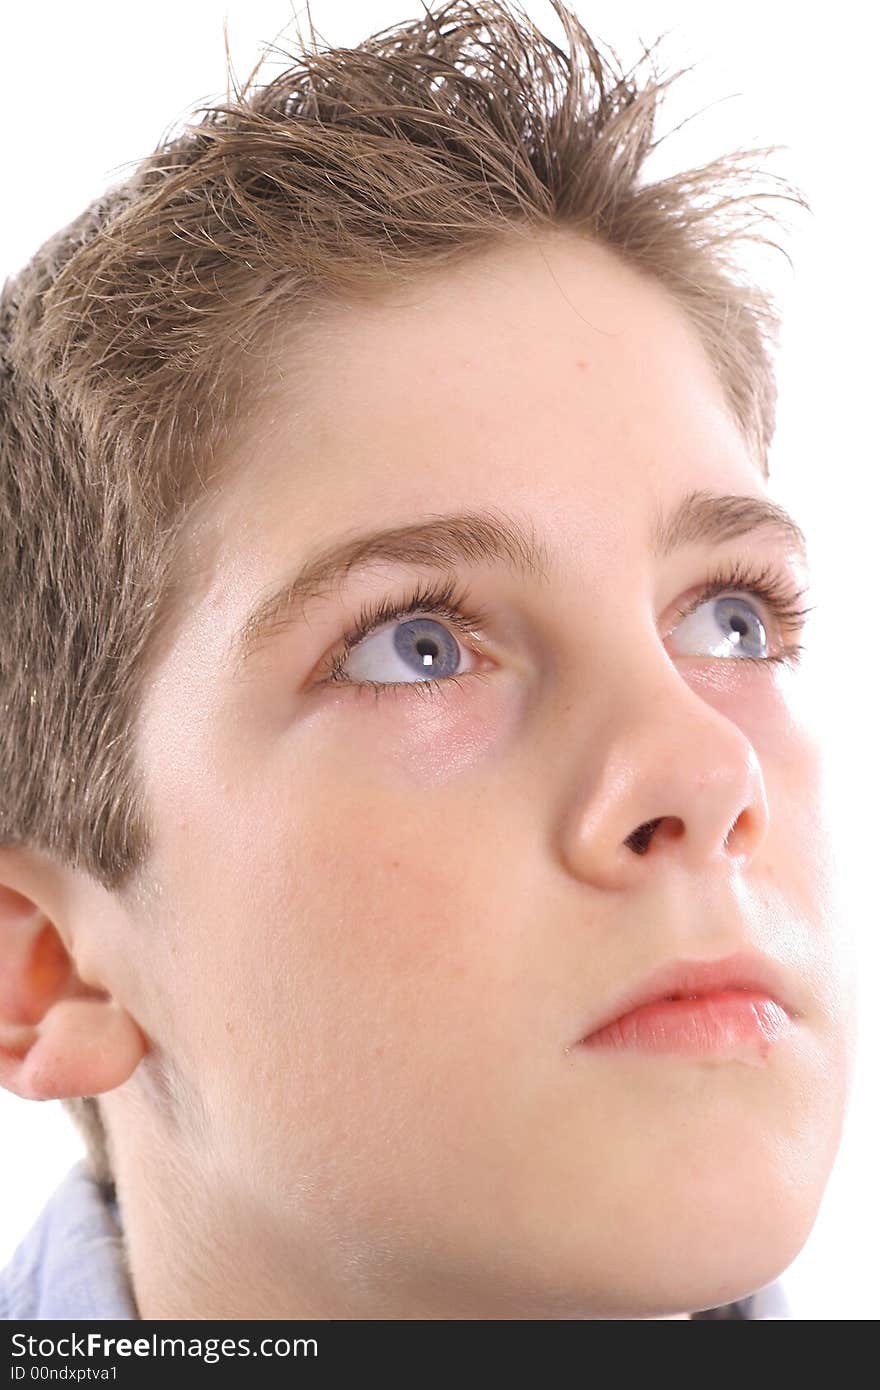 Photo of a blue eyed boy thinking upclose